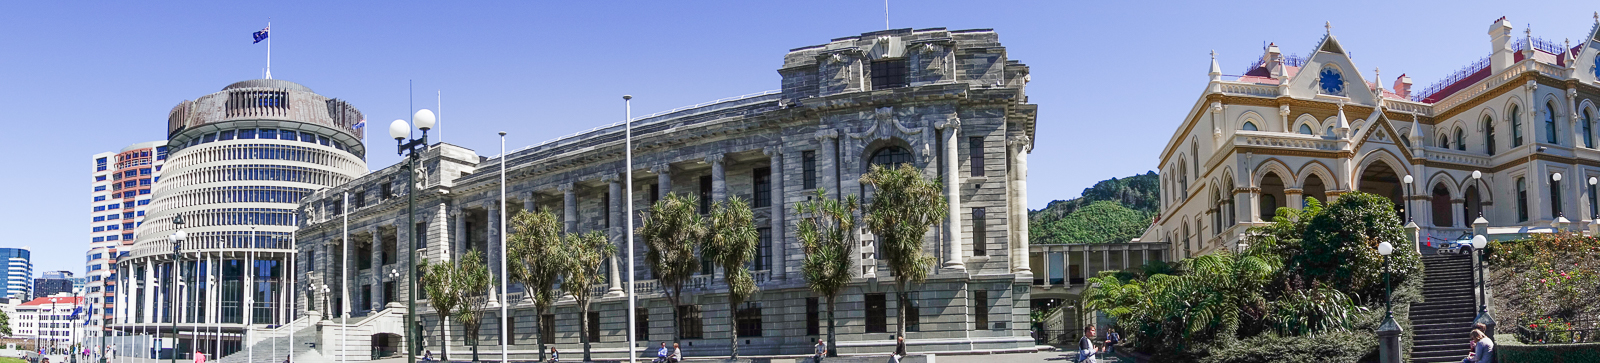 Wellington, 3 corps de batiments du parlement, à gauche le bâtiment est surnommé la ruche